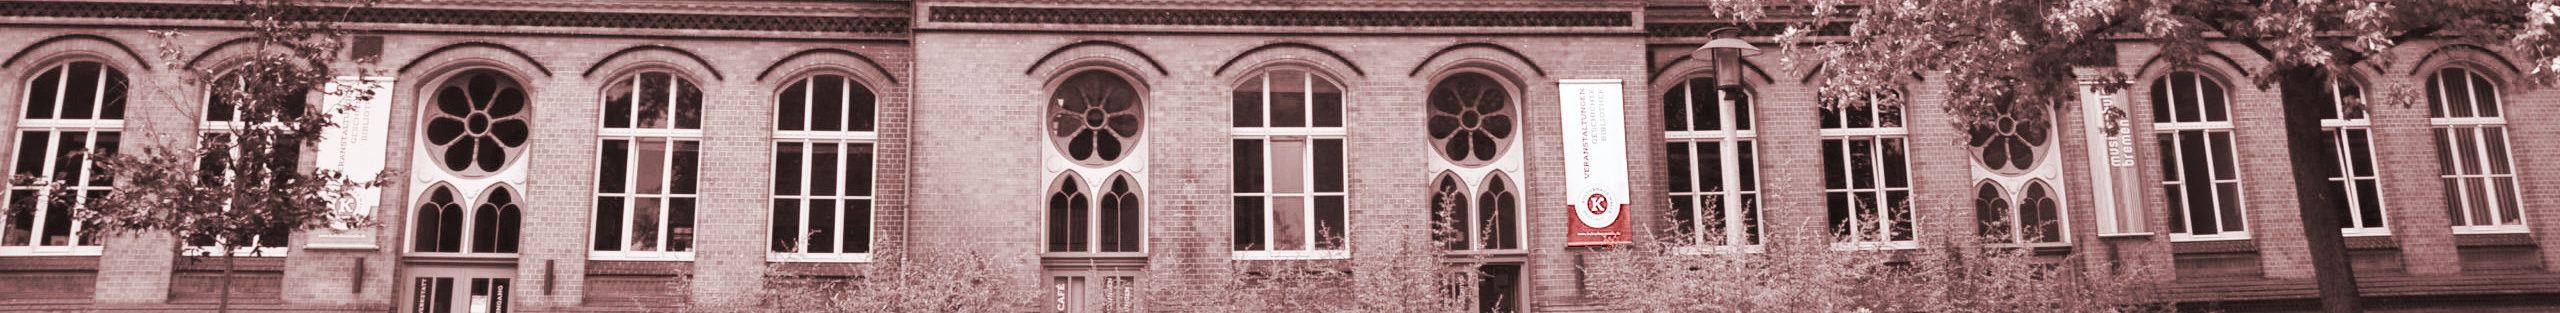 Foto von der Fassade des Kulturhauses Walle